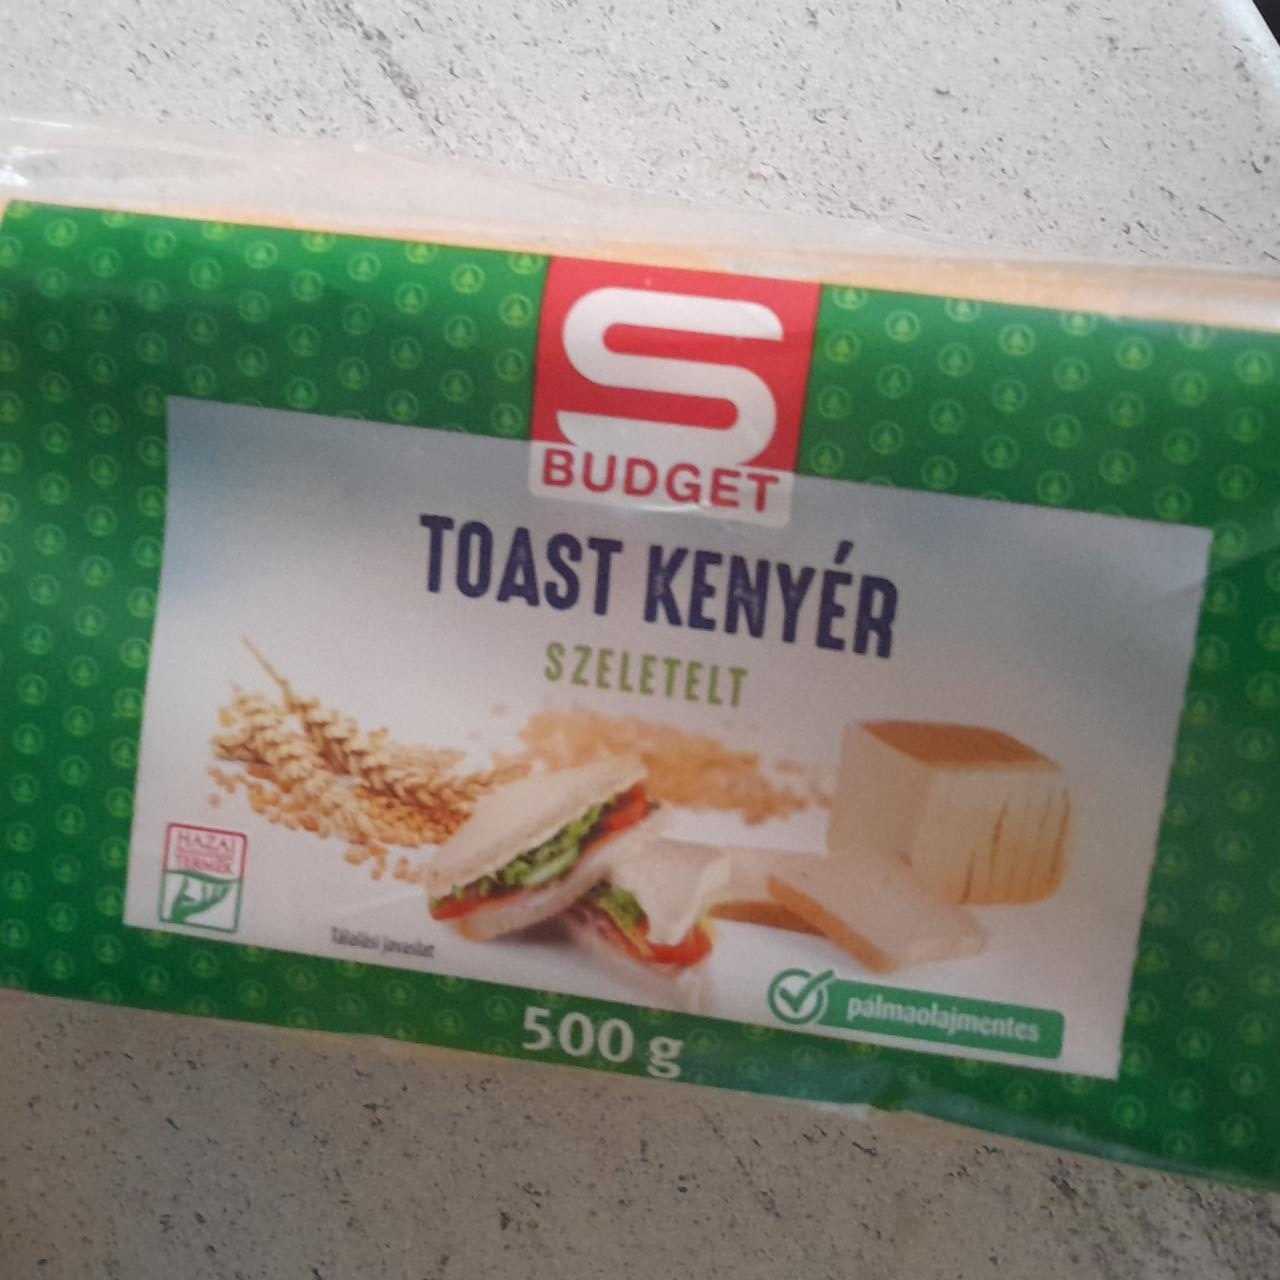 Képek - Toast kenyér szeletelt pálmaolajmentes S Budget